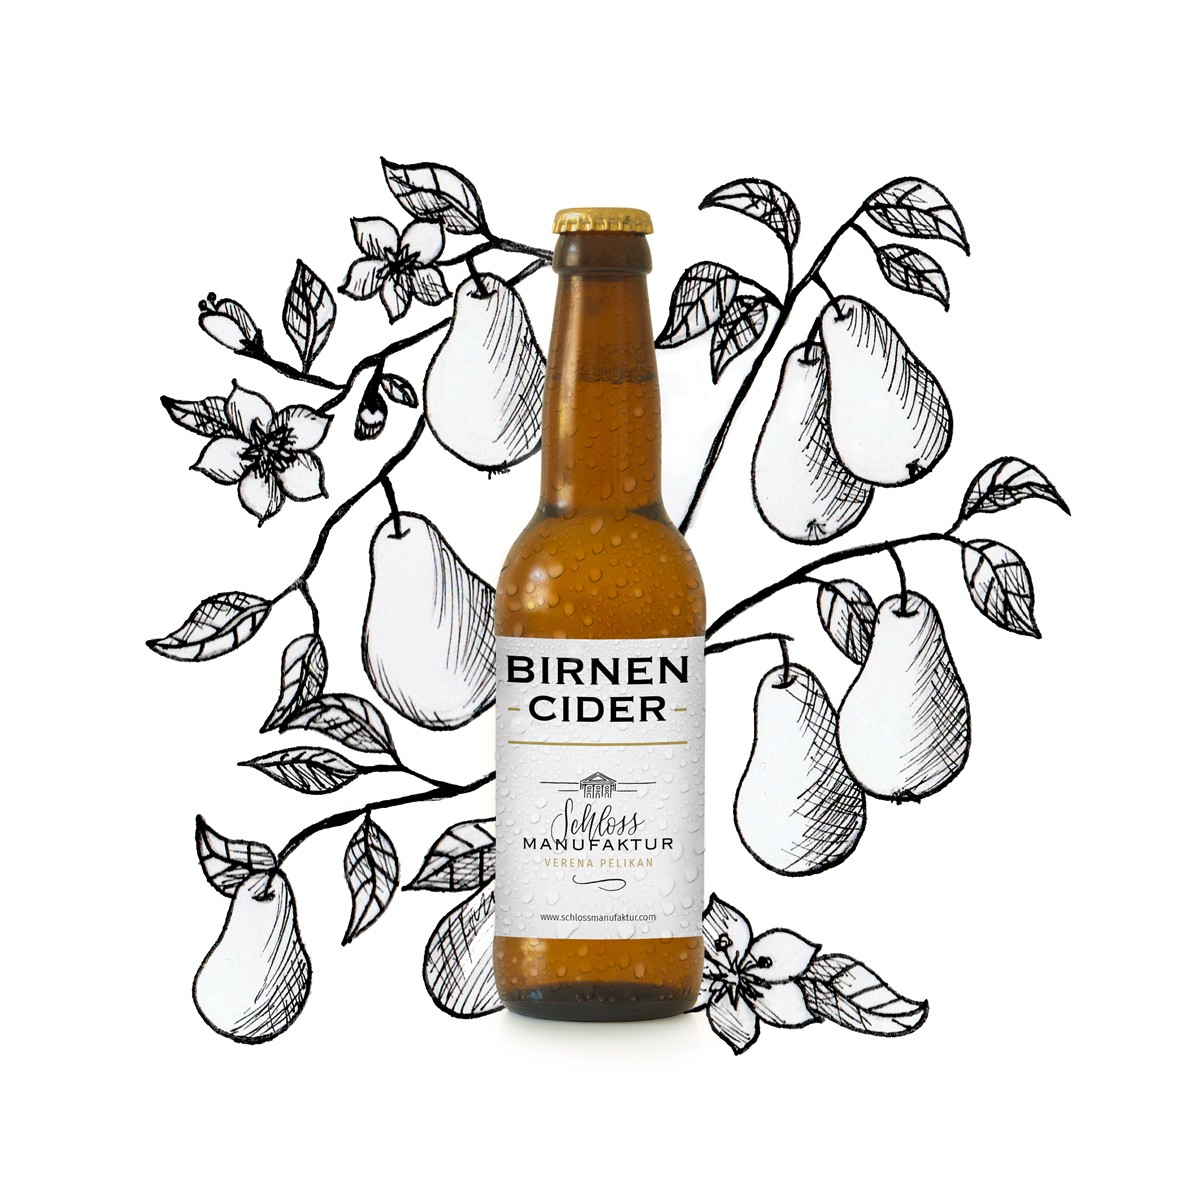 Etikettendesign und Illustration, Schlossmanufaktur Birnen-Cider